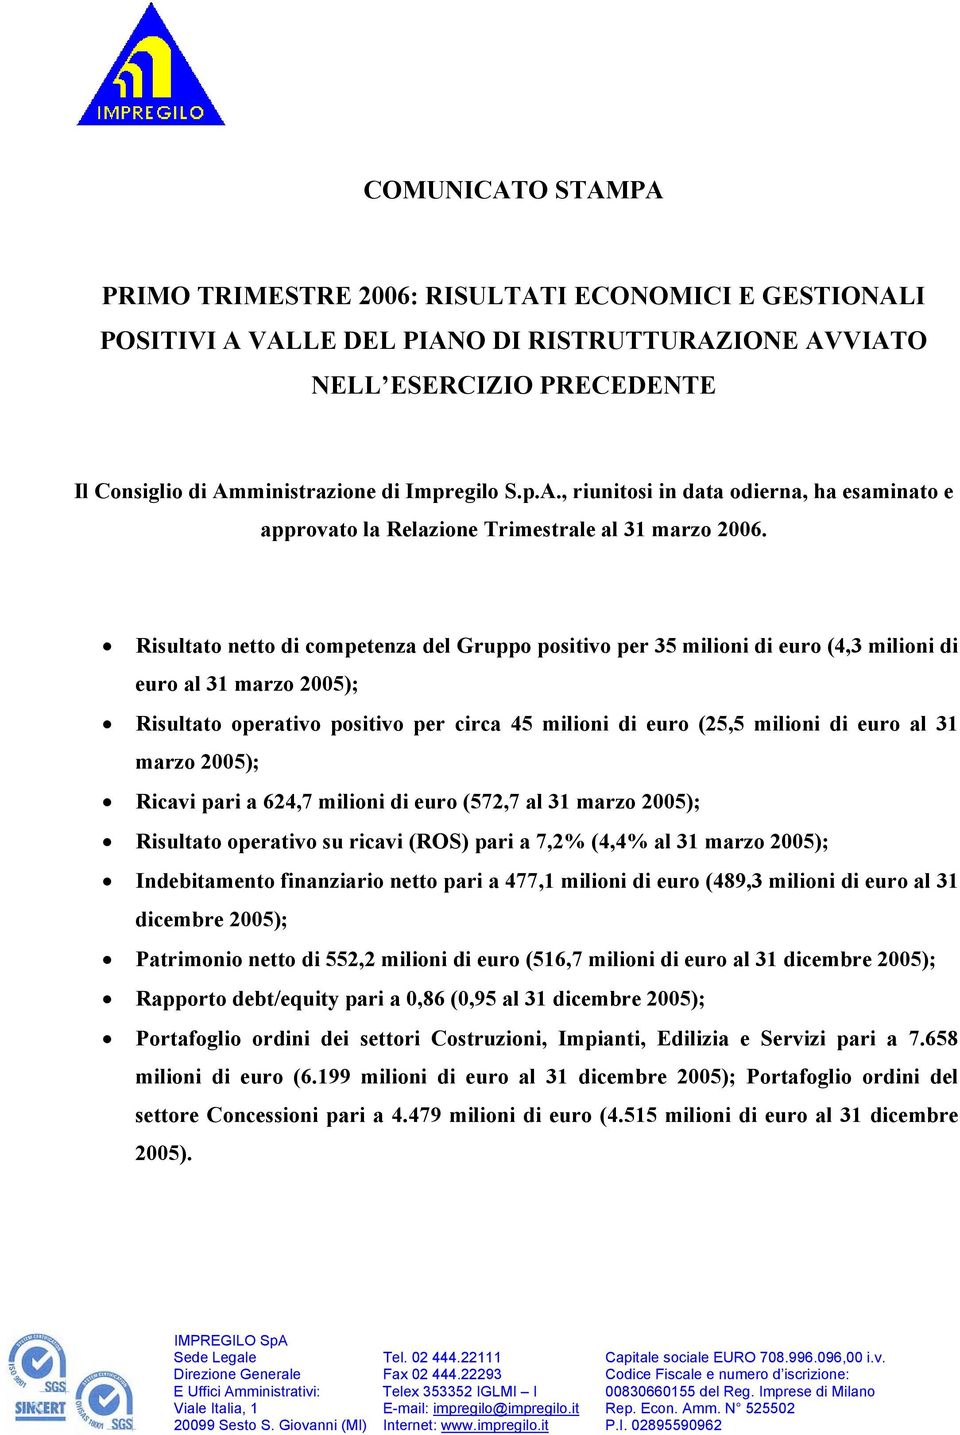 Risultato netto di competenza del Gruppo positivo per 35 milioni di euro (4,3 milioni di euro al 31 marzo 2005); Risultato operativo positivo per circa 45 milioni di euro (25,5 milioni di euro al 31